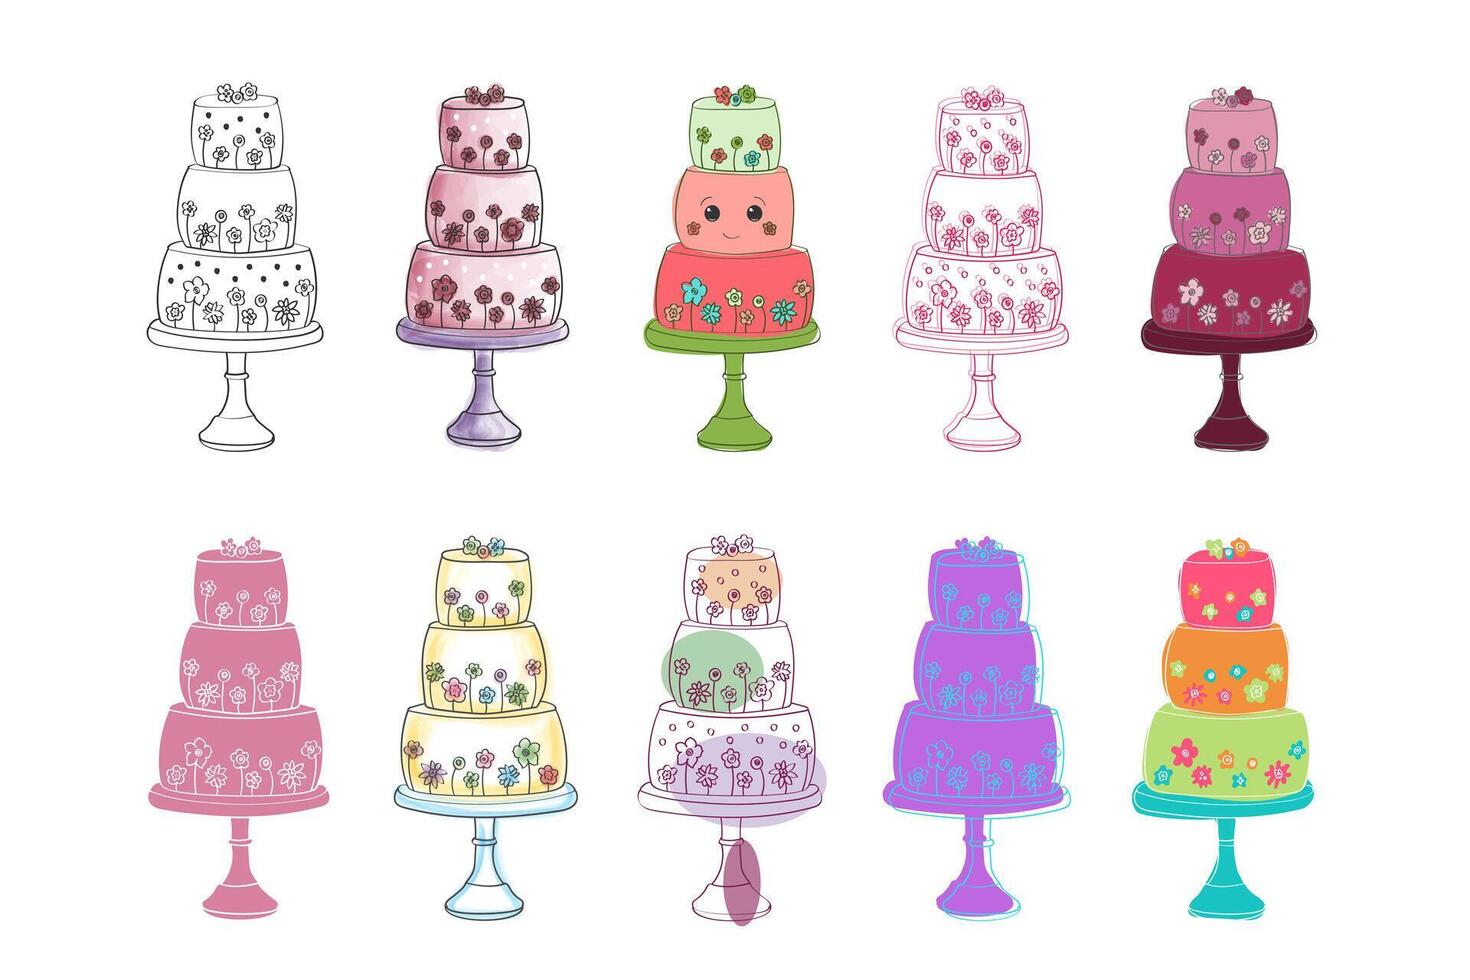 een verscheidenheid van anders gekleurde cakes is geregeld netjes Aan een duidelijk wit achtergrond. elk taart is uniek in kleur en ontwerp, creëren een levendig en visueel aantrekkelijk Scherm vector